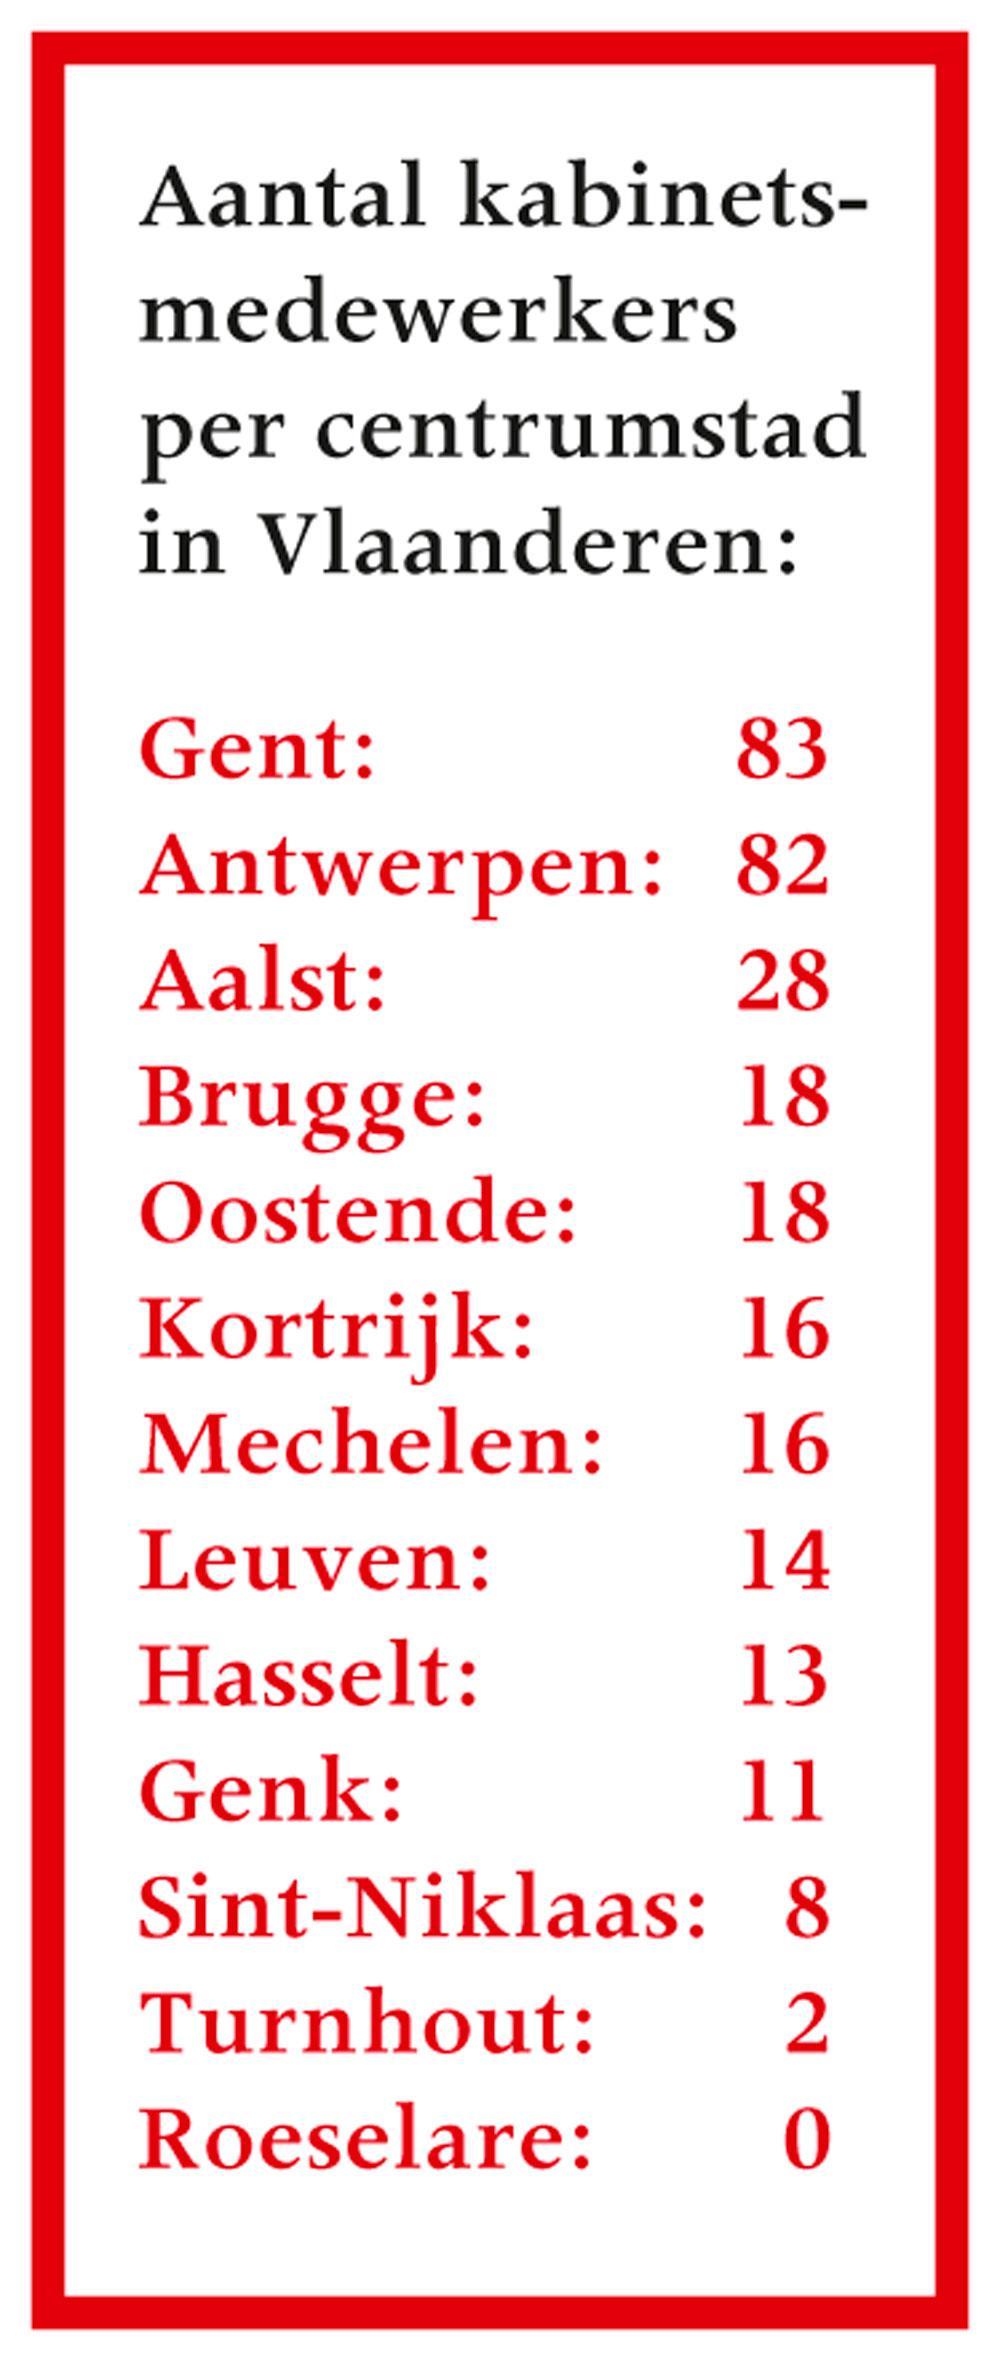 Gent kampioen in aantal kabinetsmedewerkers